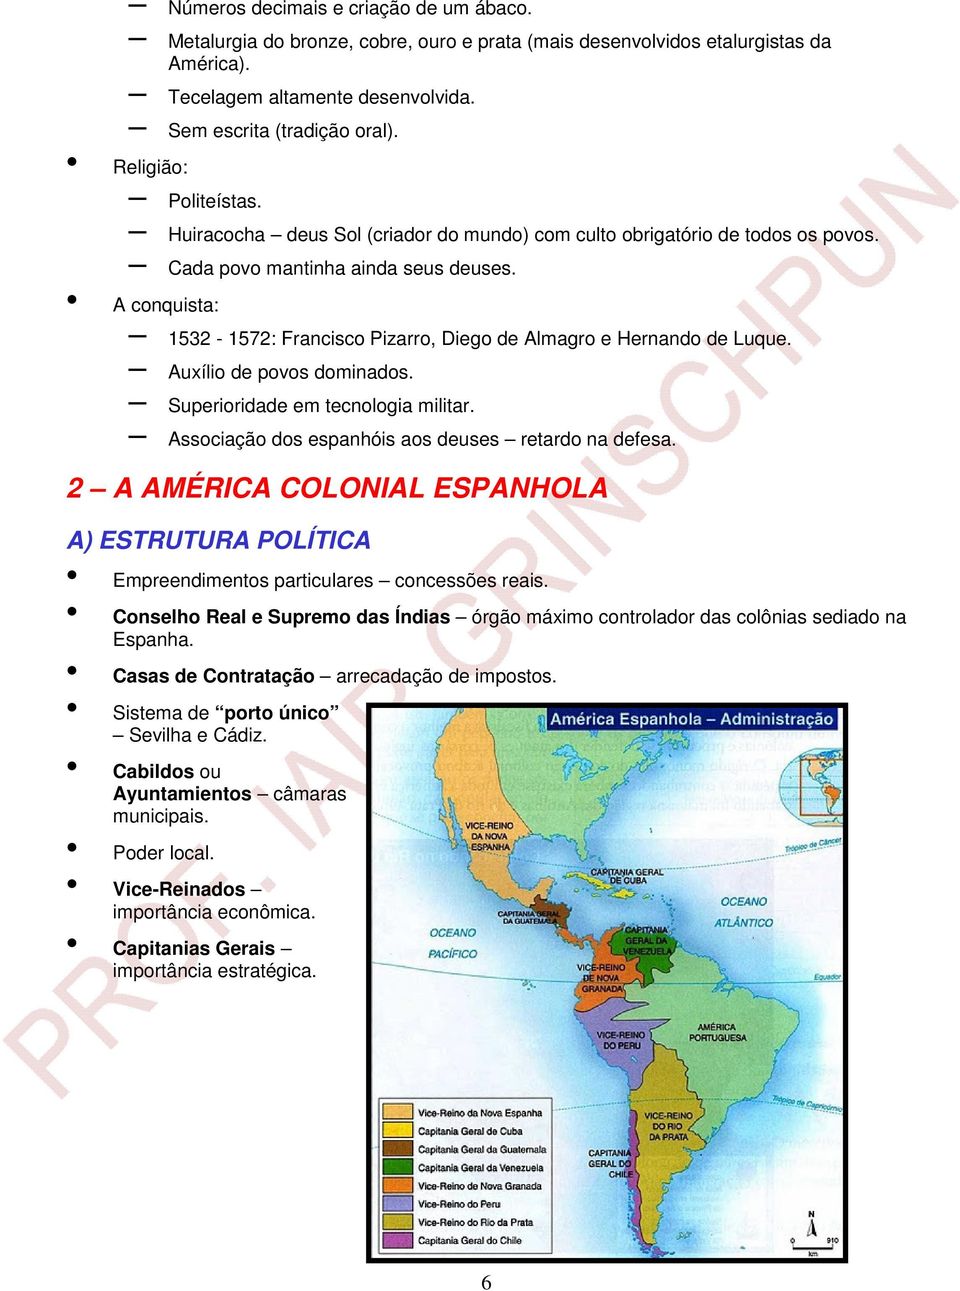 A conquista: 1532-1572: Francisco Pizarro, Diego de Almagro e Hernando de Luque. Auxílio de povos dominados. Superioridade em tecnologia militar. Associação dos espanhóis aos deuses retardo na defesa.